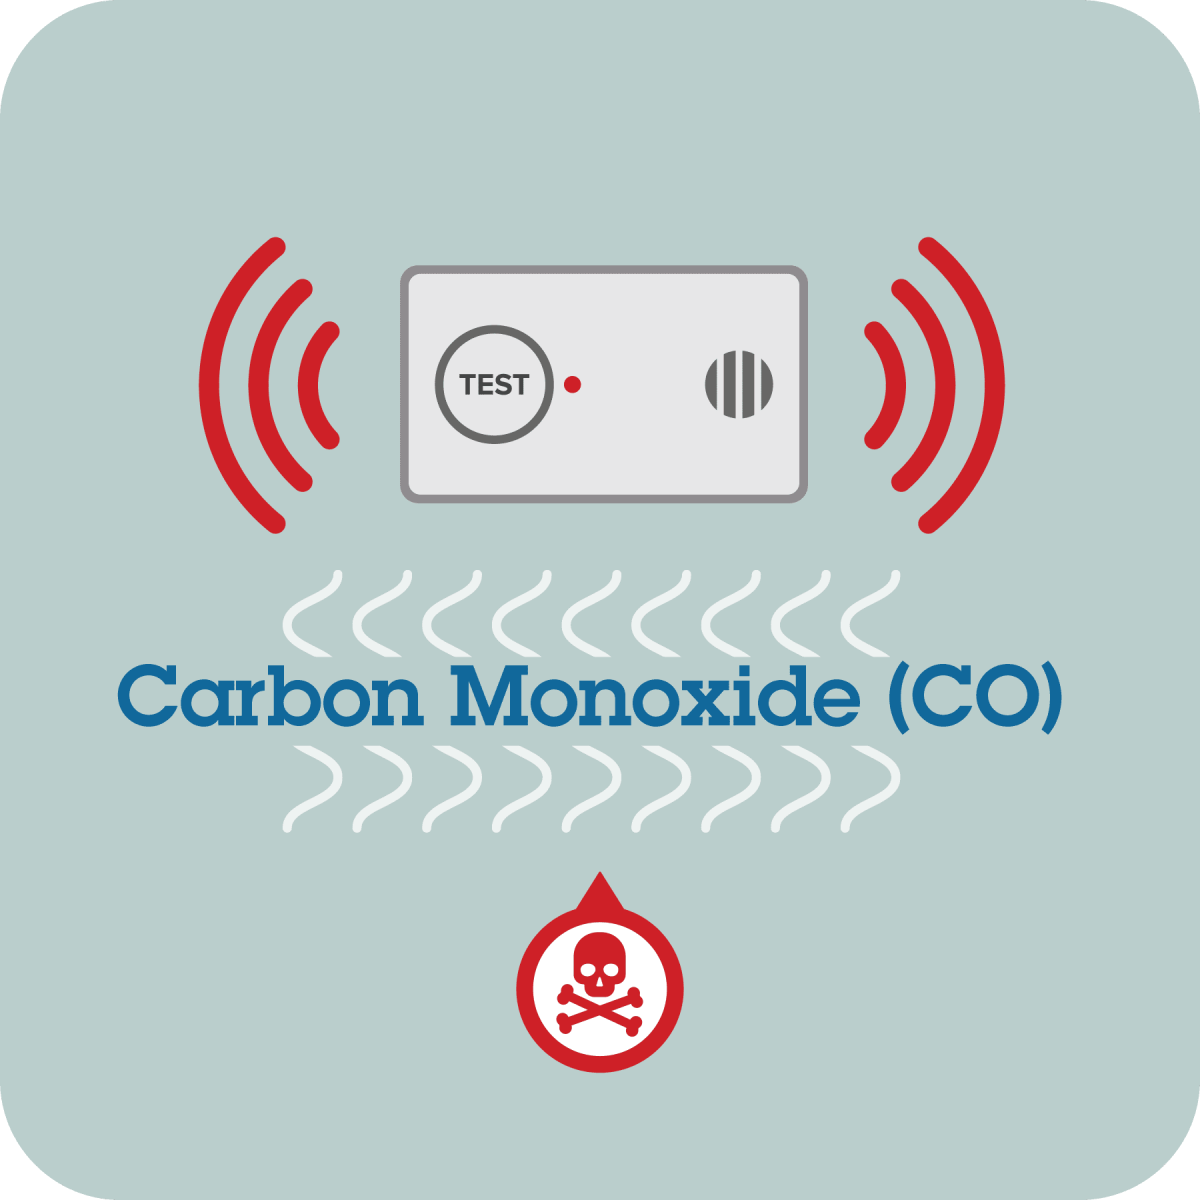 Carbon Monoxide. Cardon Monoxide co-am. Alarm go off